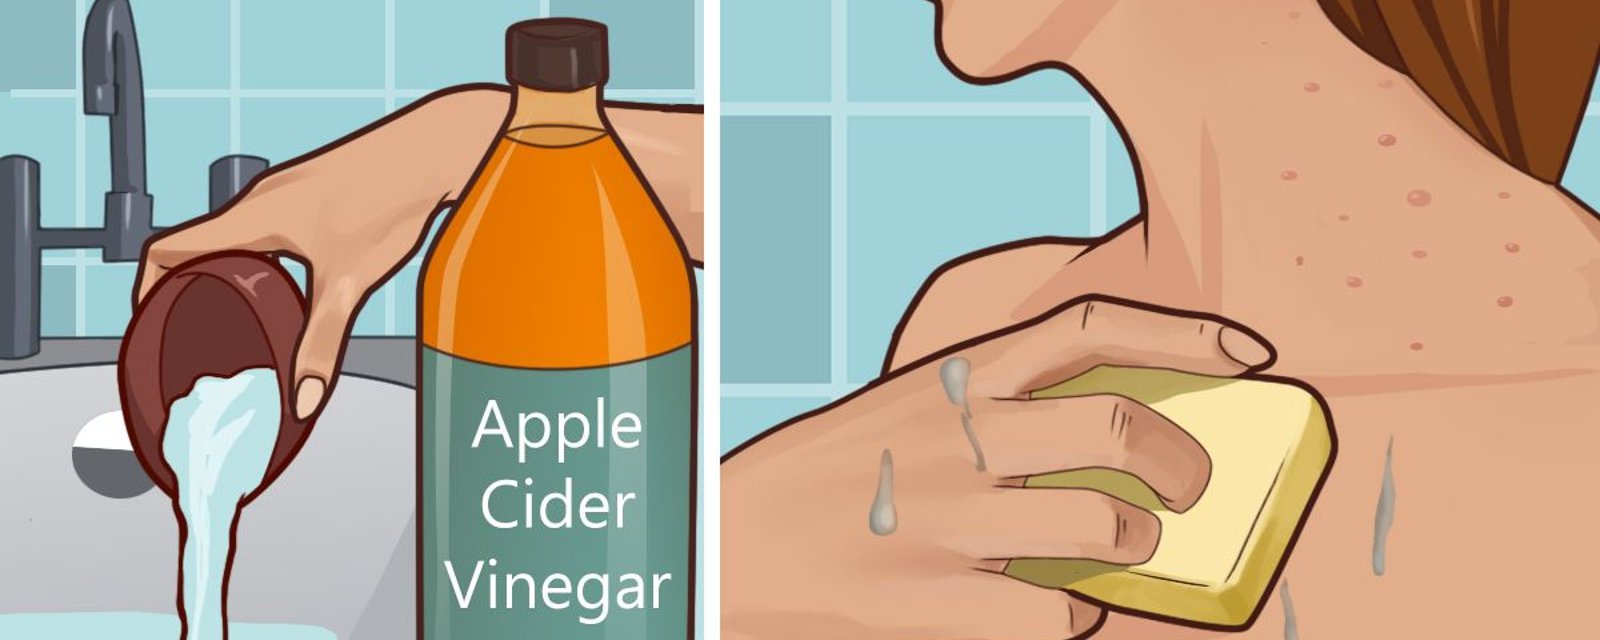 Appliquez du vinaigre de cidre de pomme sur votre visage et voyez ce qui arrive à vos taches de vieillesse, votre acné et autre...! 